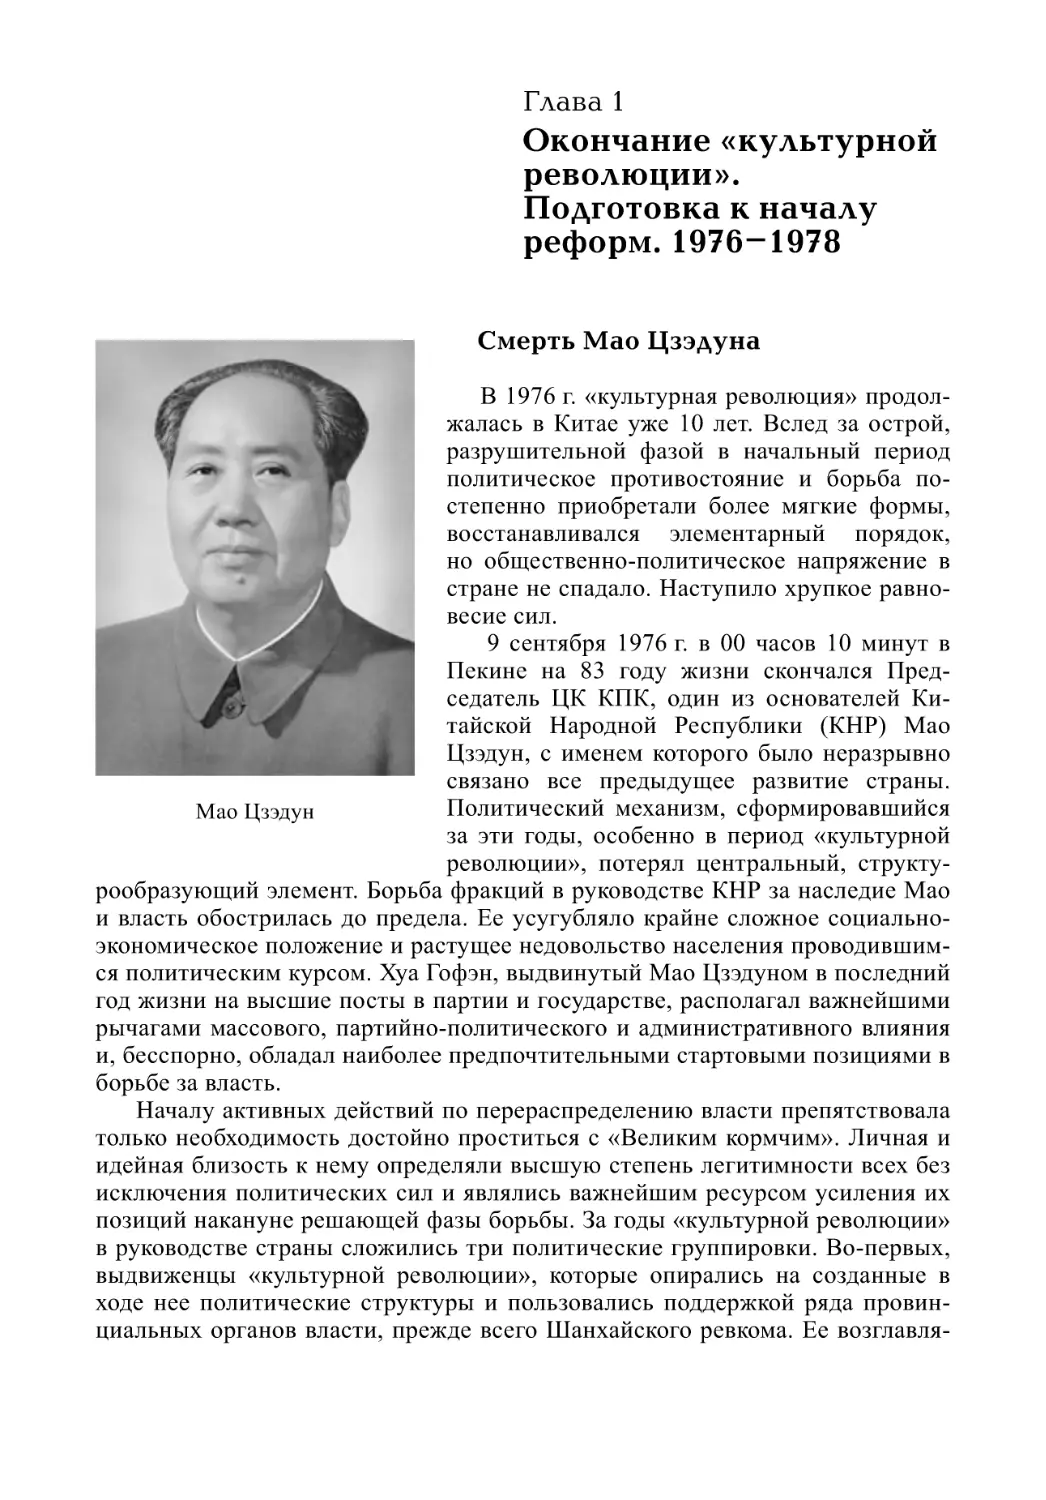 Глава 1. Окончание «культурной революции». Подготовка к началу реформ. 1976–1978
Смерть Мао Цзэдуна (А.В. Виноградов)